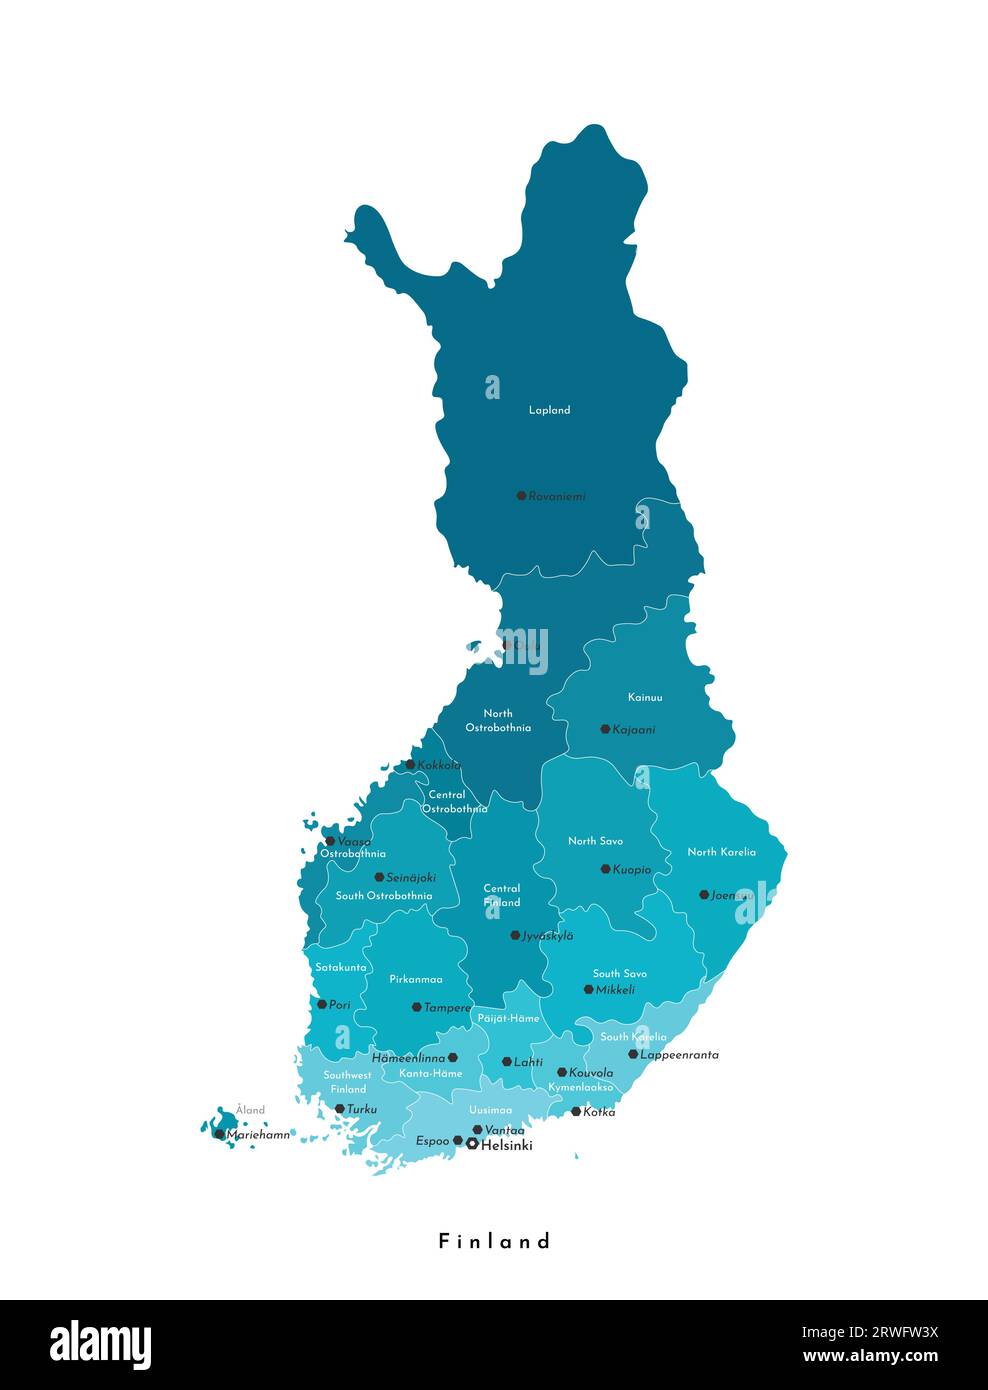 Illustrazione vettoriale isolata. Mappa amministrativa semplificata della Finlandia. Nomi delle grandi città e regioni finlandesi. Colori blu. Sfondo bianco Illustrazione Vettoriale